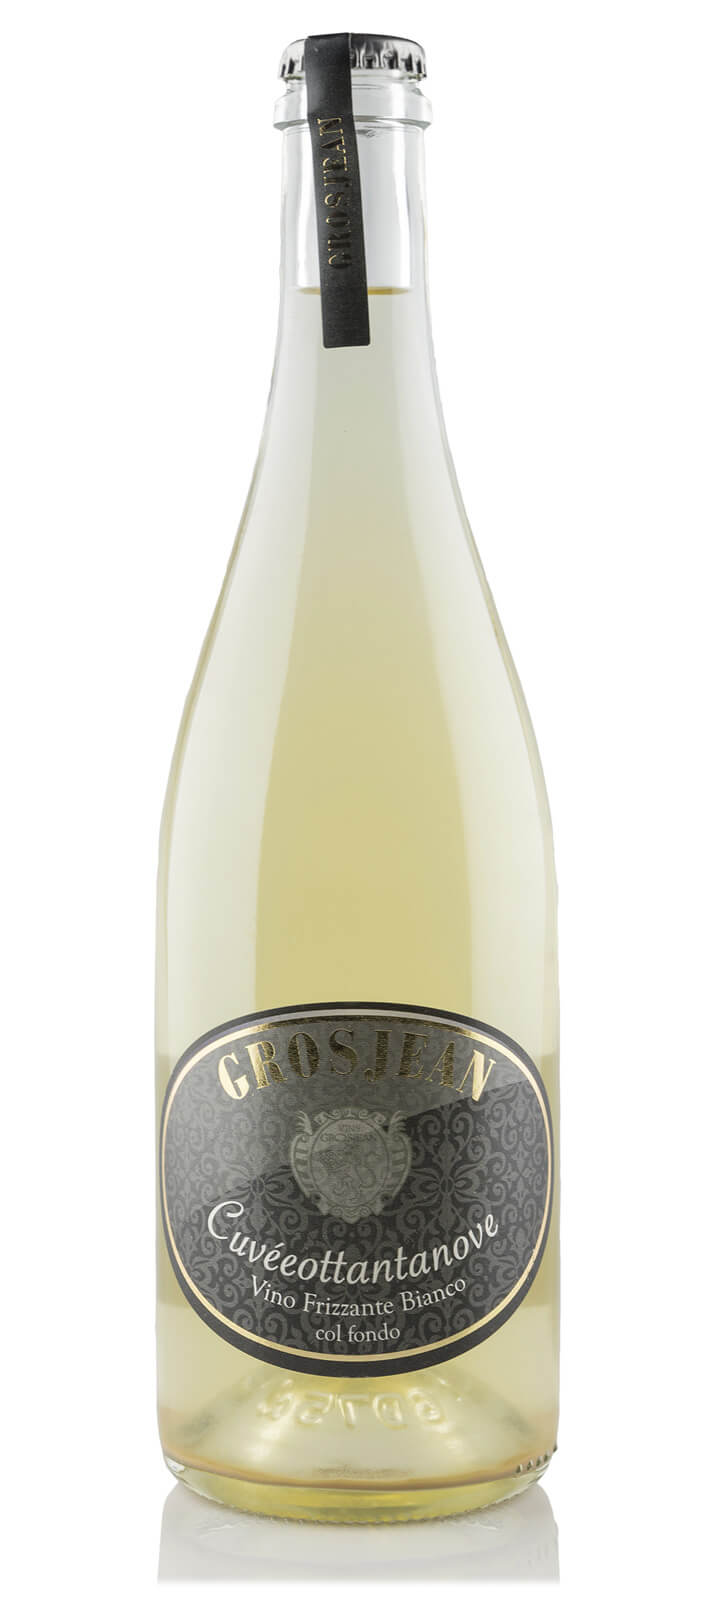 Cuveeottantanove Vino Frizzante col fondo - Grosjean Grands Vins de Montagne